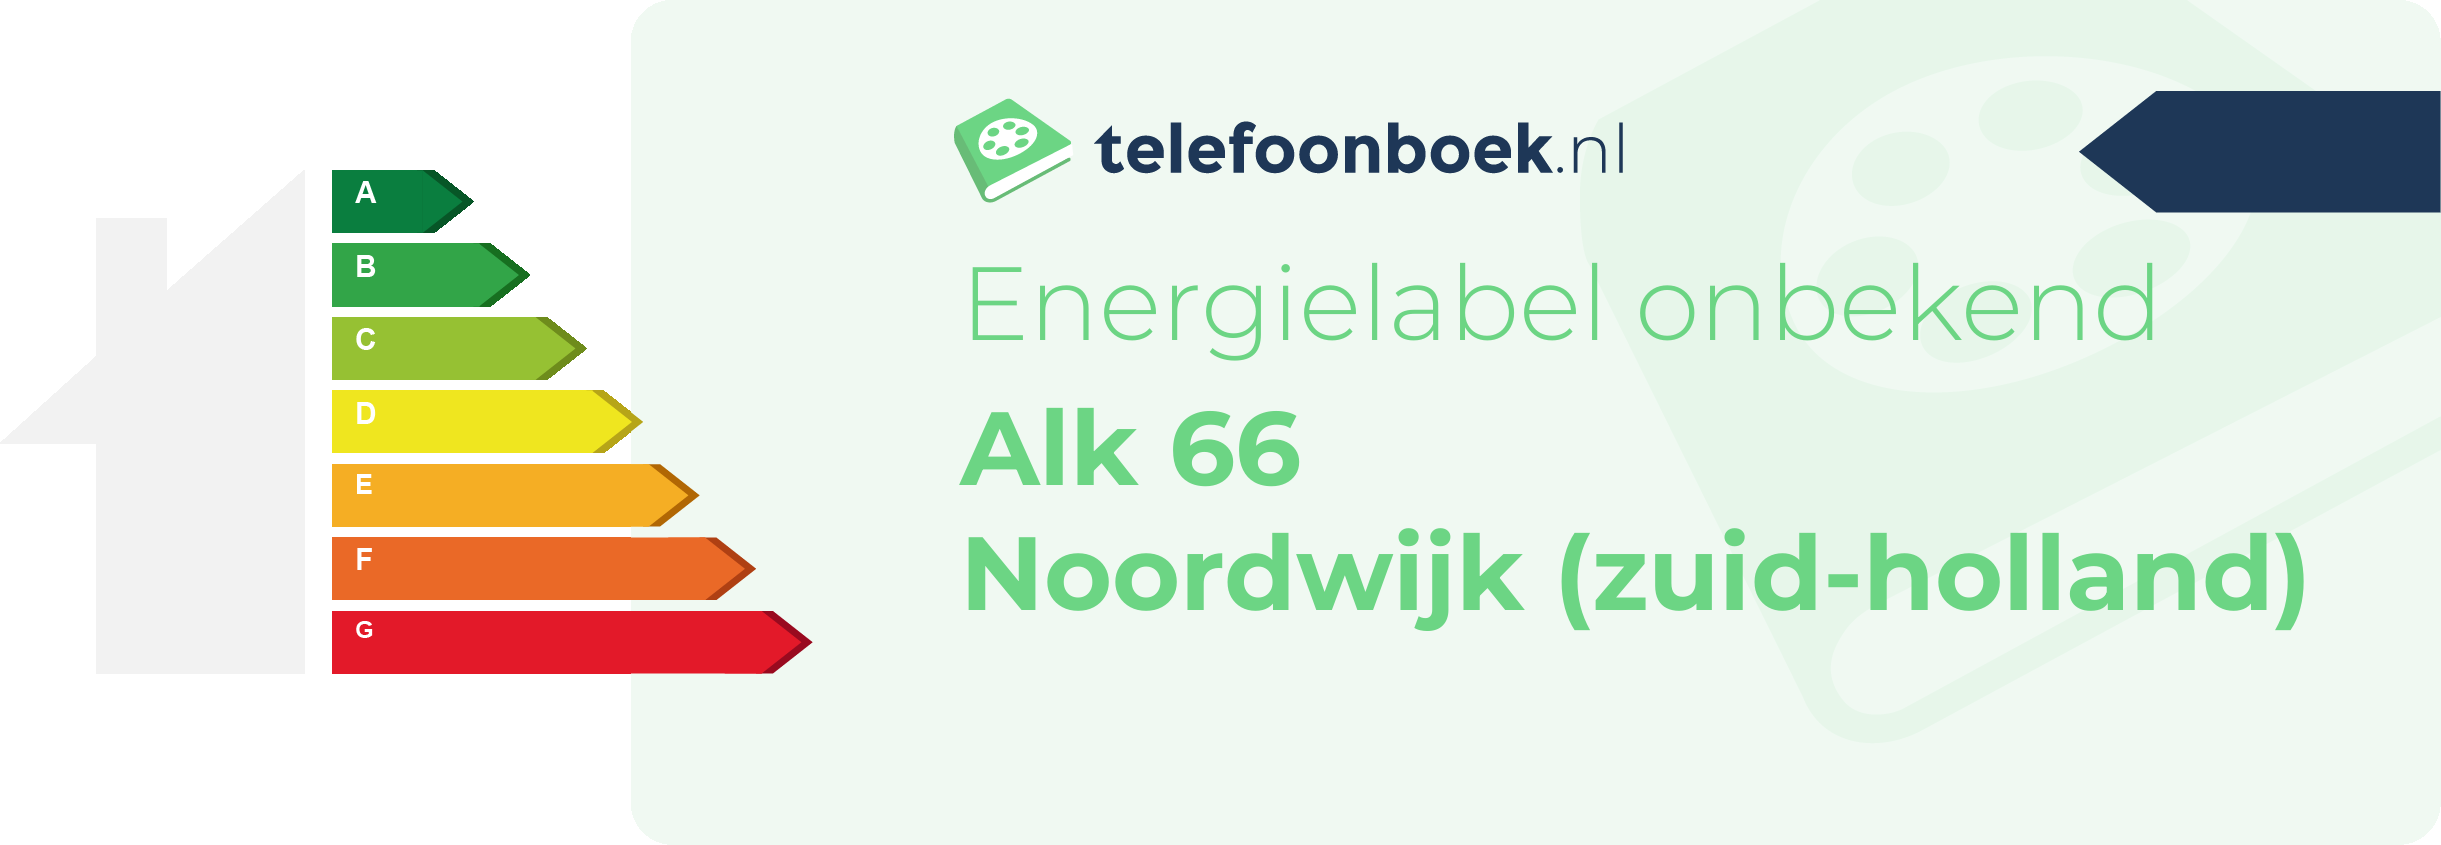 Energielabel Alk 66 Noordwijk (Zuid-Holland)